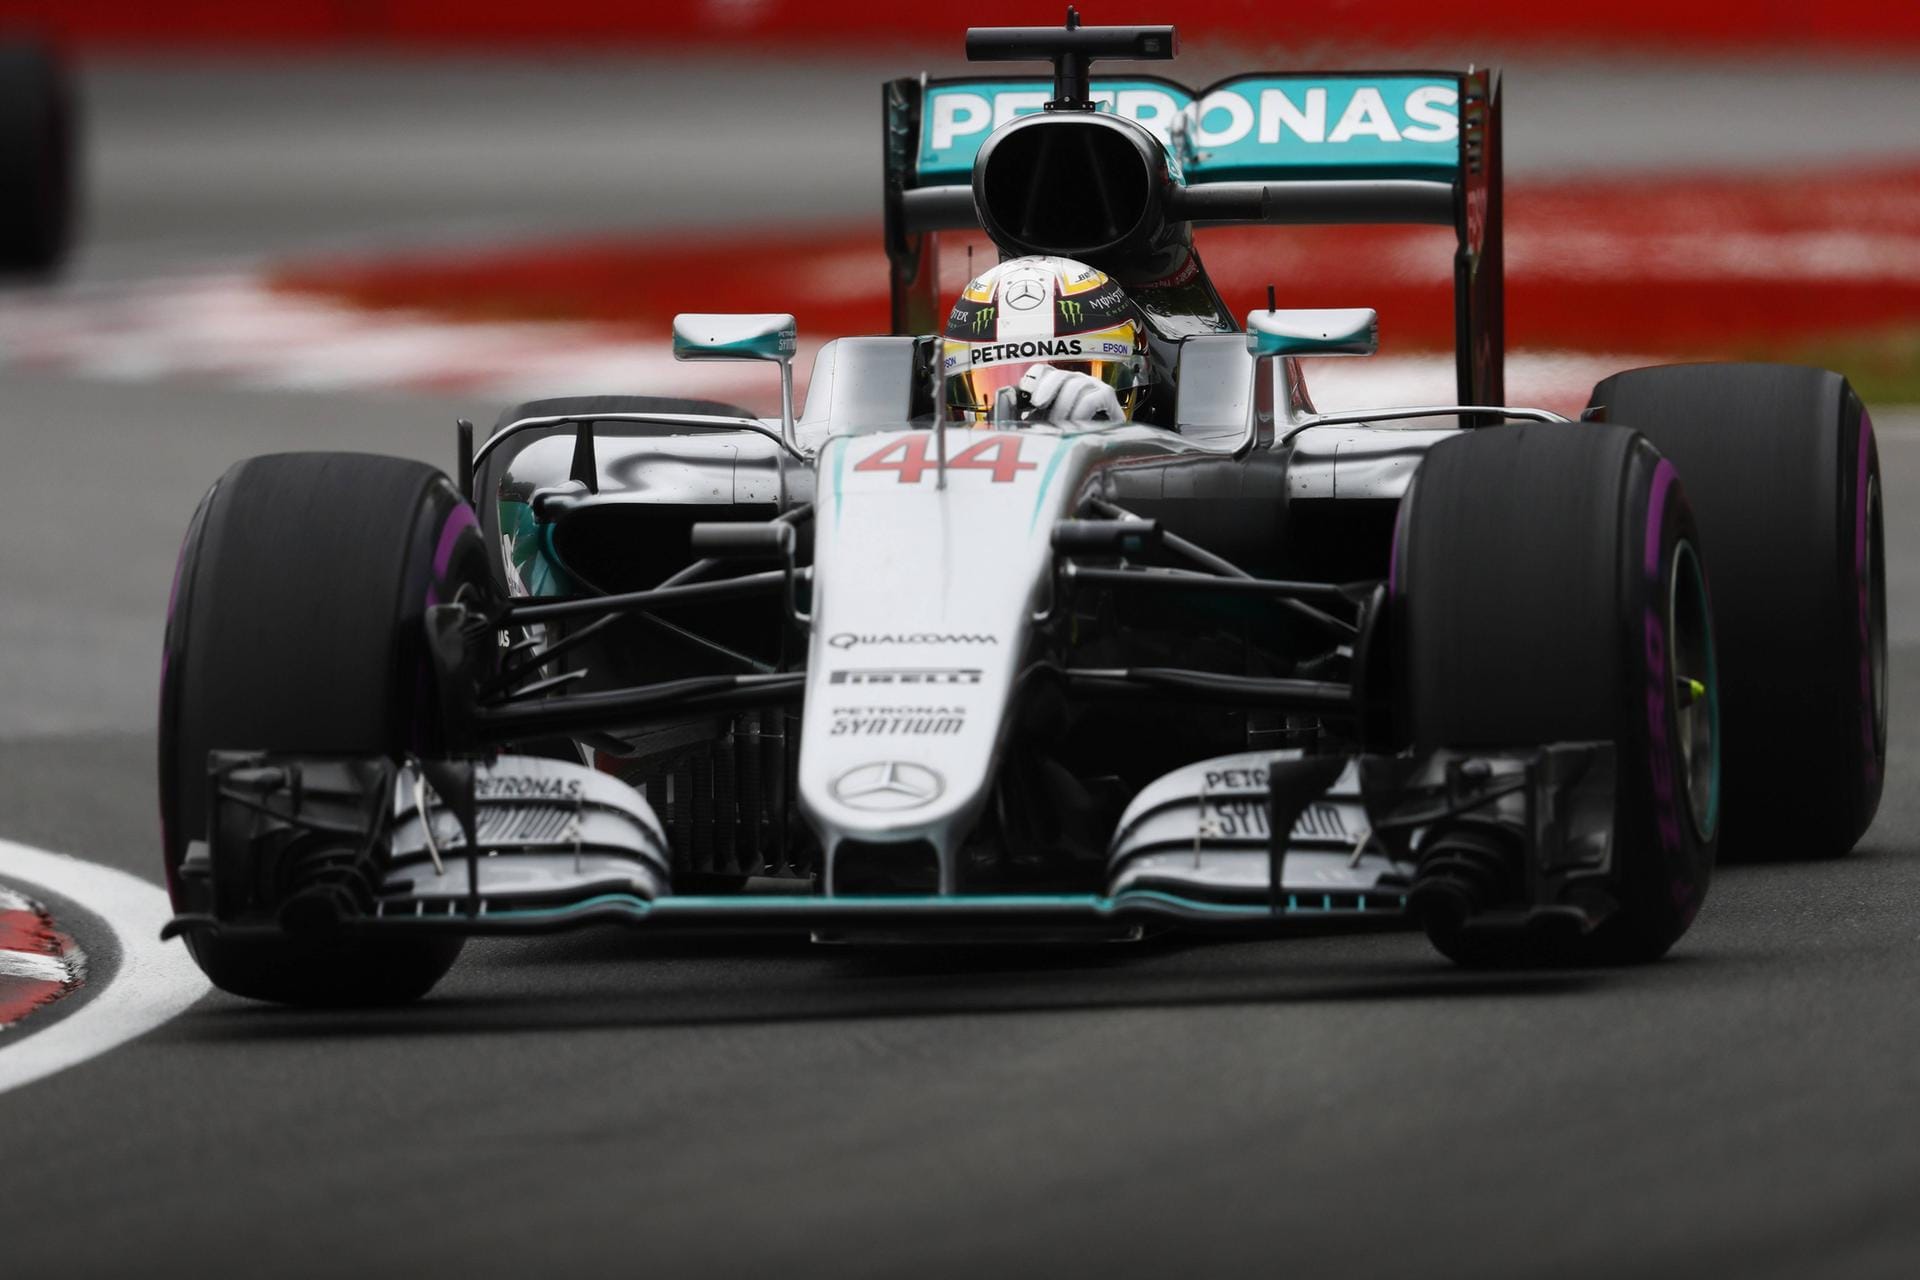 Für Lewis Hamilton lief es in der dritten Trainingssession nicht nach Plan. Der aktuelle WM-Zweite musste sich mit dem fünften Platz begnügen.